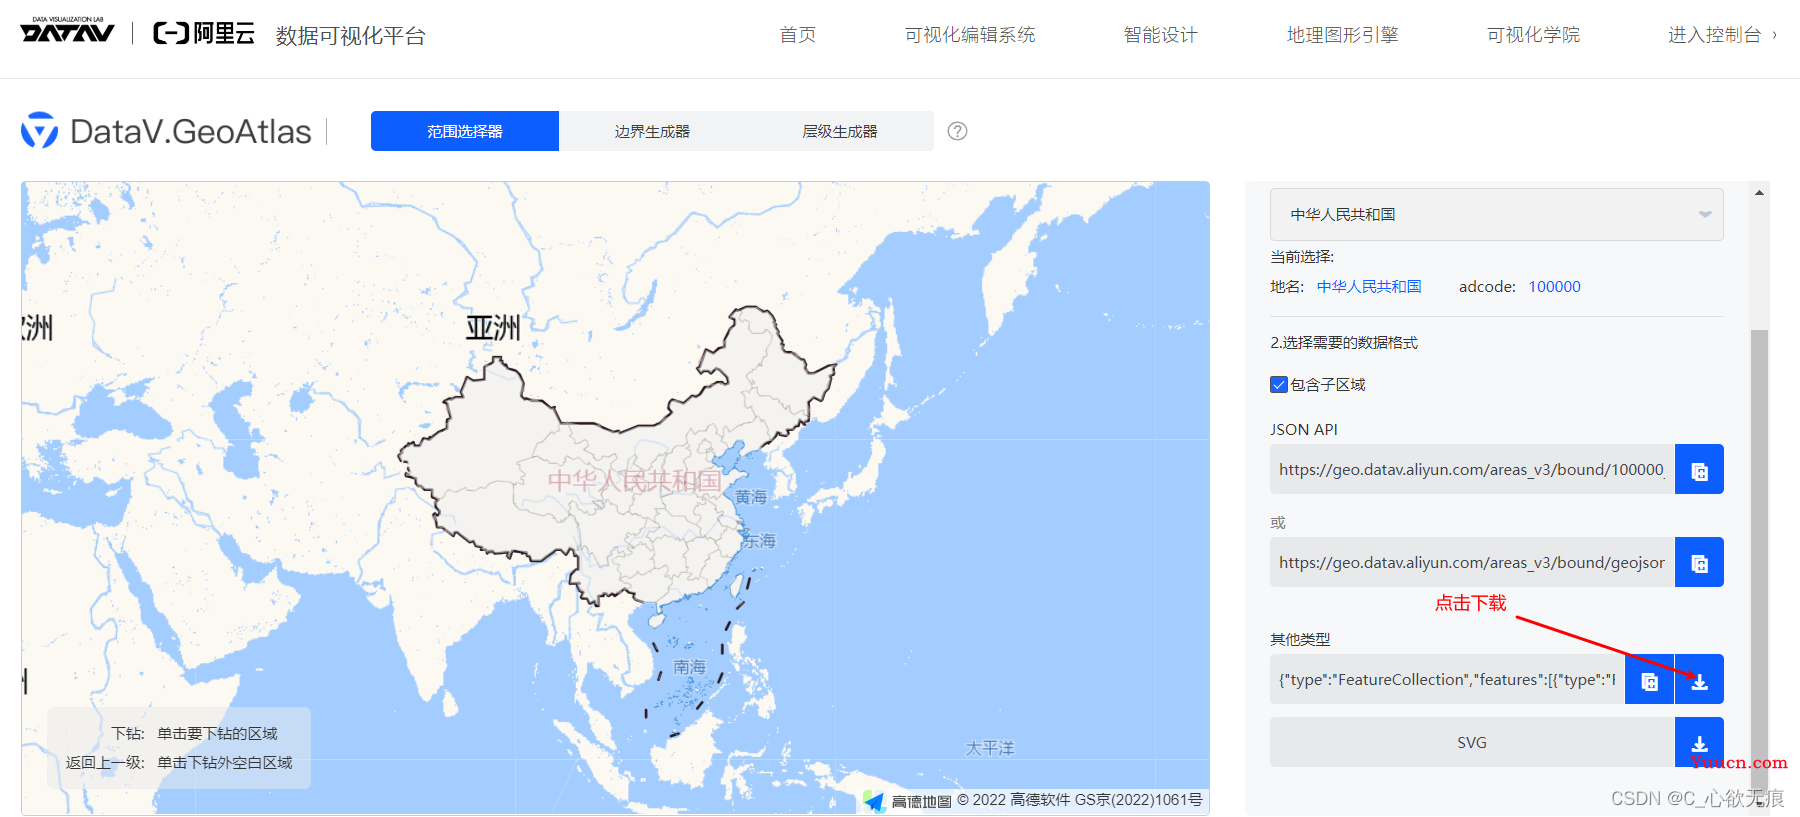 vue - vue使用echarts实现中国地图和点击省份进行查看